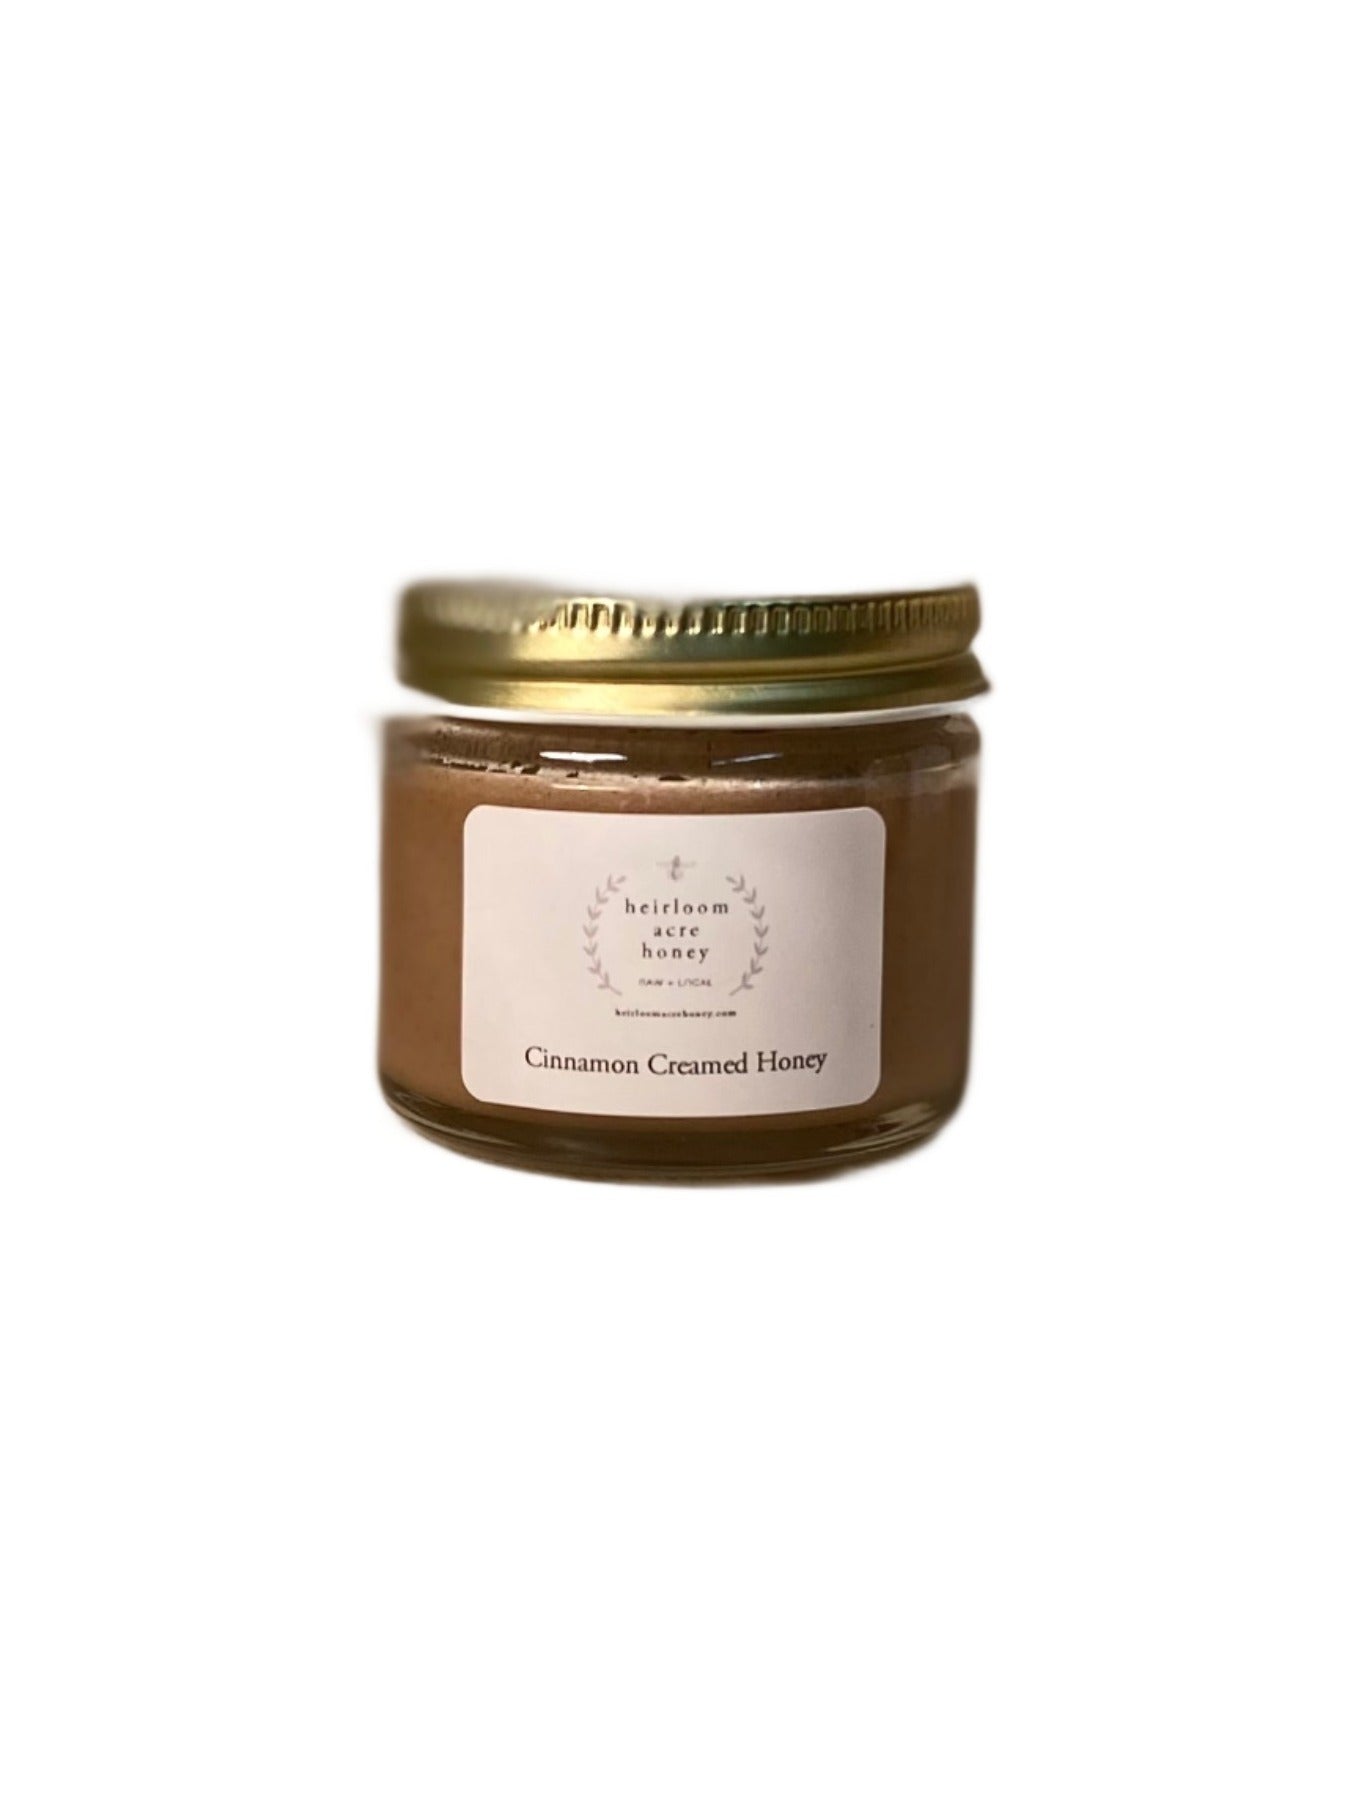 Heirloom Acre Honey - 2oz Mini Cinnamon Creamed Honey- Olive Oil Etcetera